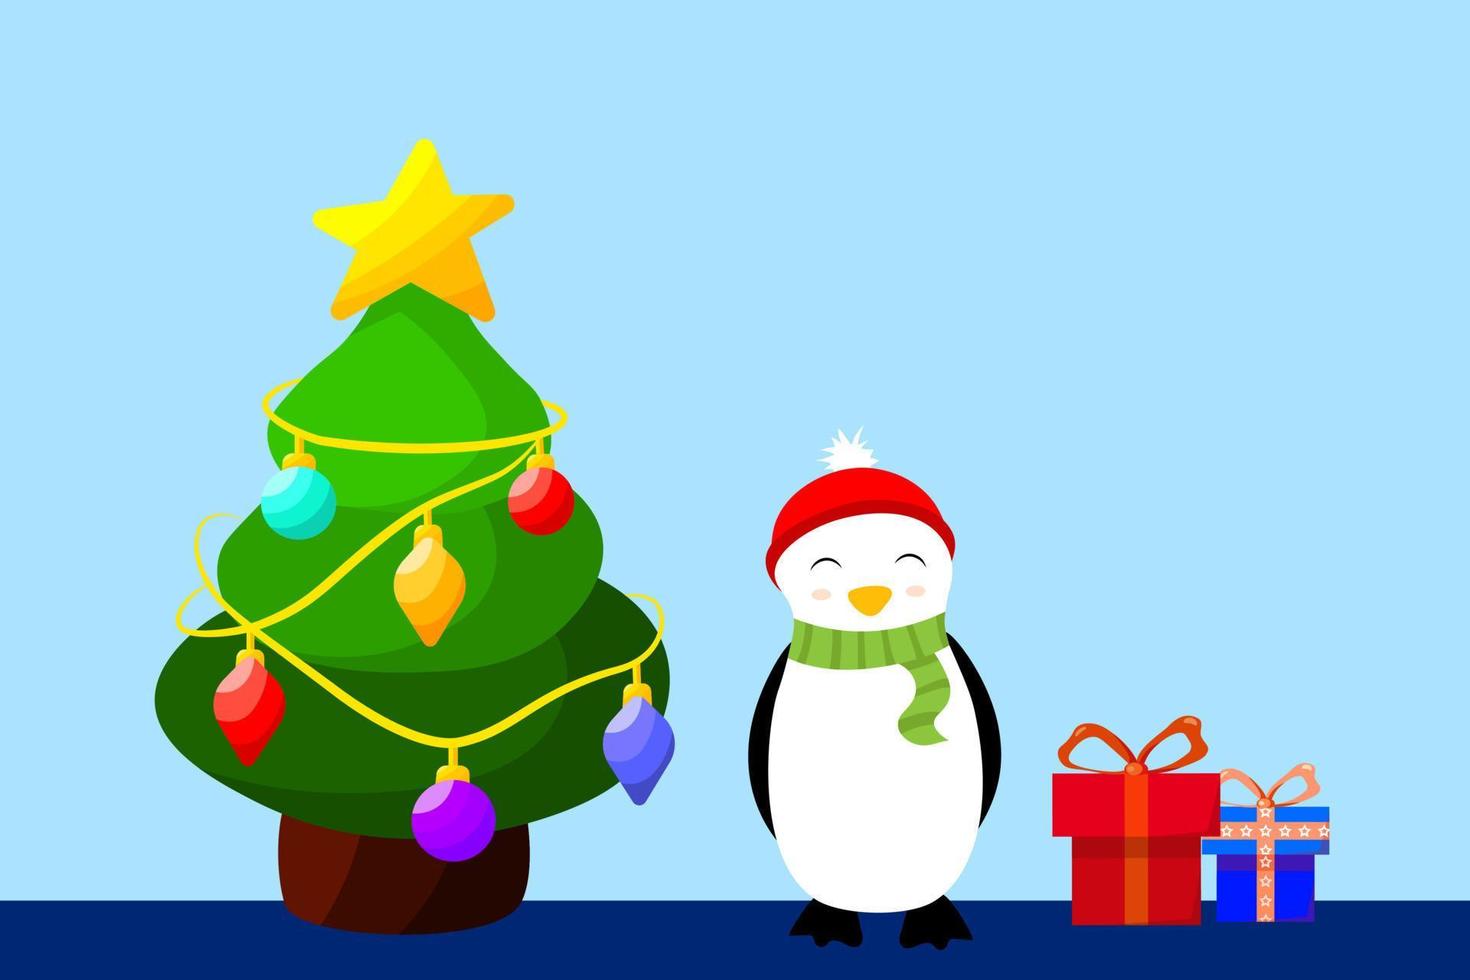 banner de vacaciones de personaje de dibujos animados de vector con árbol de navidad, cajas de regalo y lindo pingüino. plantilla de tarjeta de felicitación de celebración de año nuevo. celebración plana de año nuevo con diseño de personajes animales.